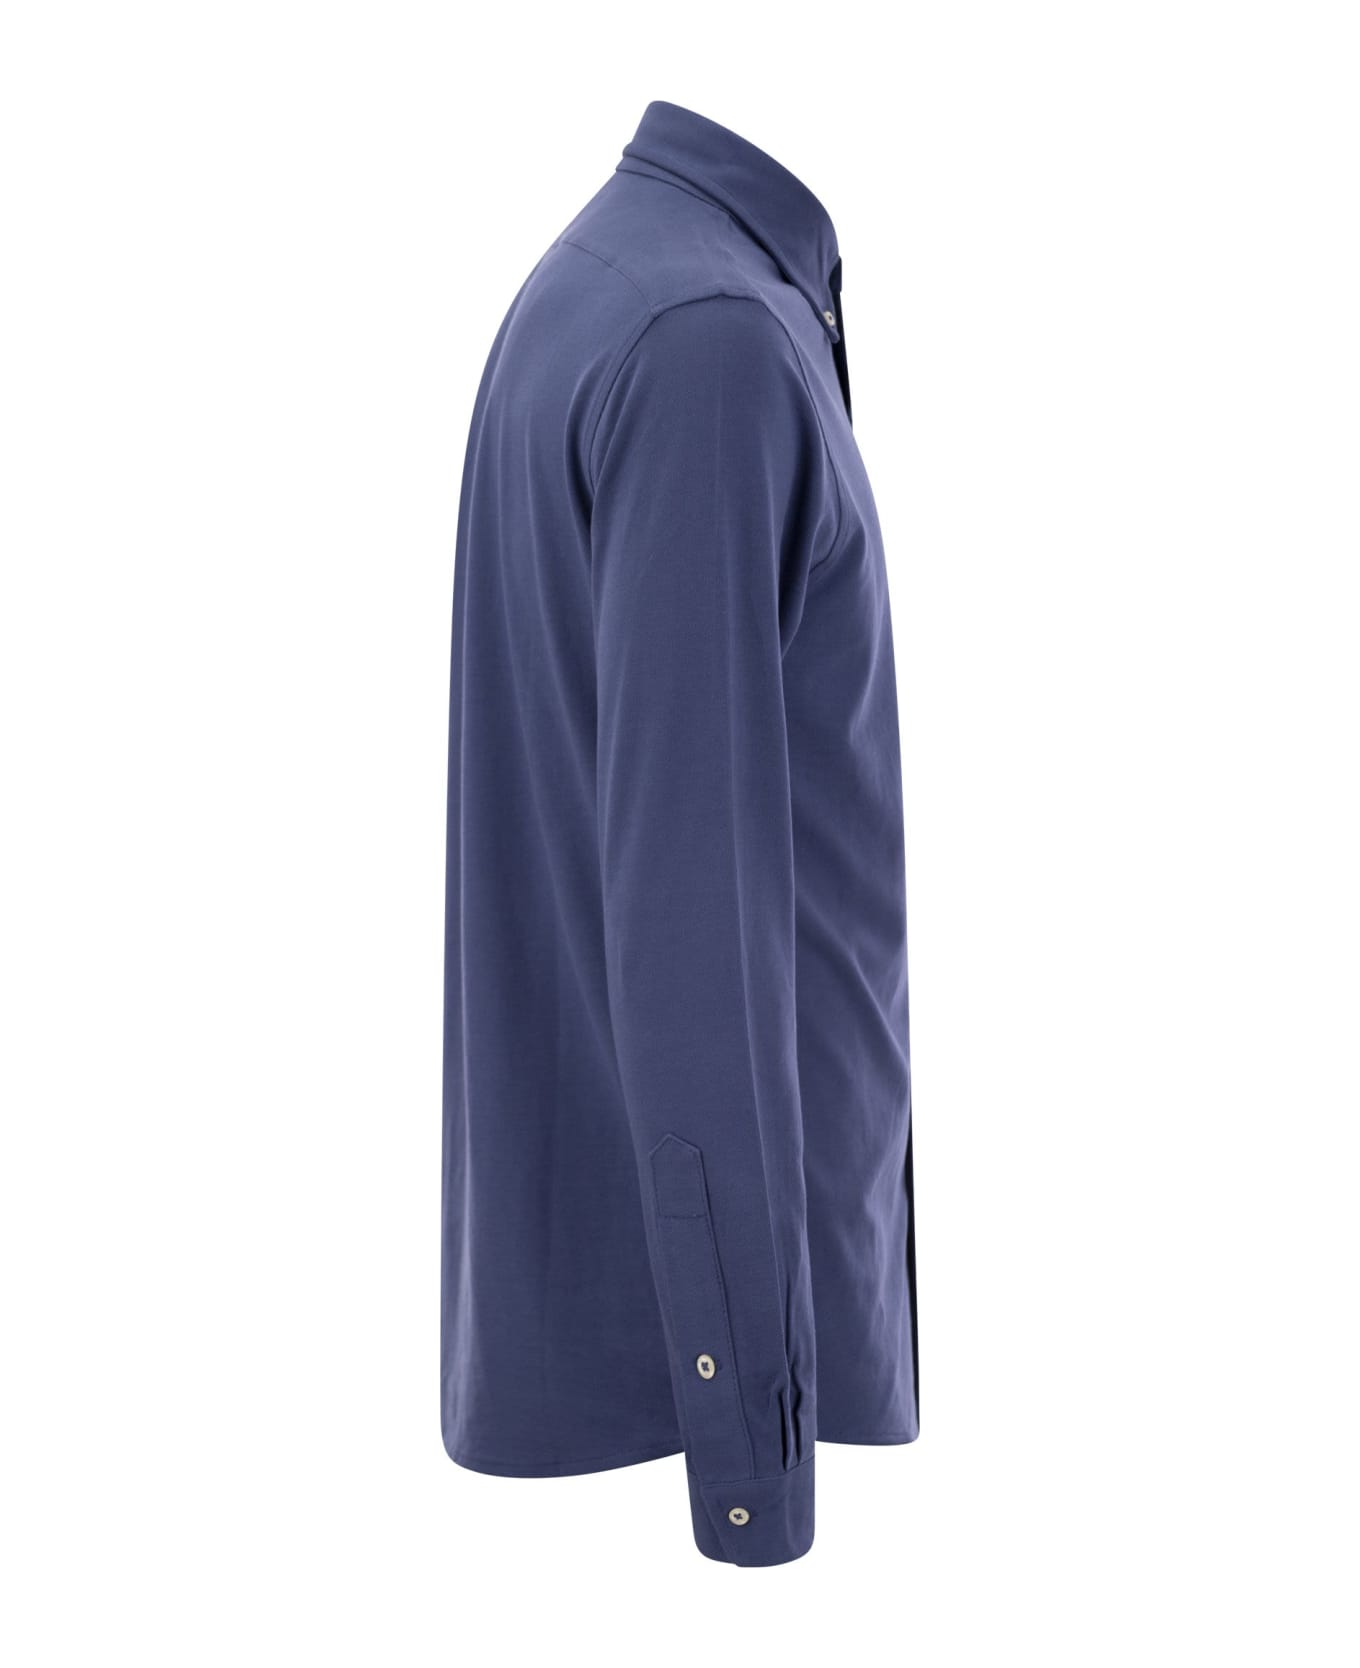 Polo Ralph Lauren Ultralight Pique Shirt - Avio シャツ